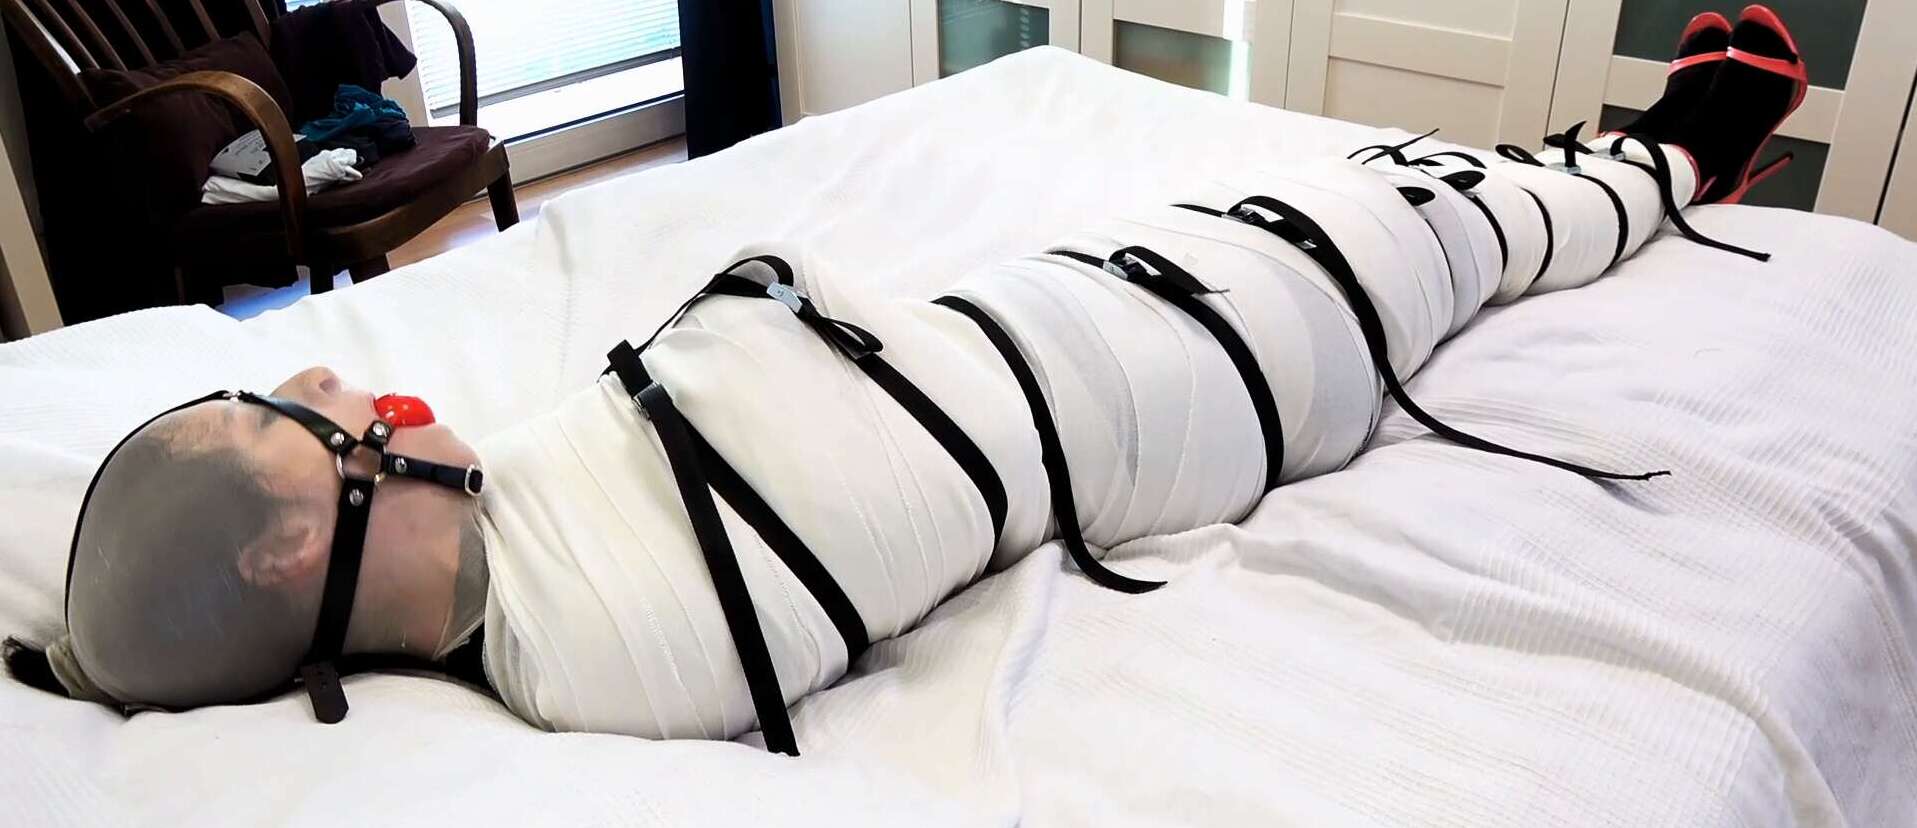 Mummification Bondage - Mummified and restrained in bandages, nylonhooded - Bondish